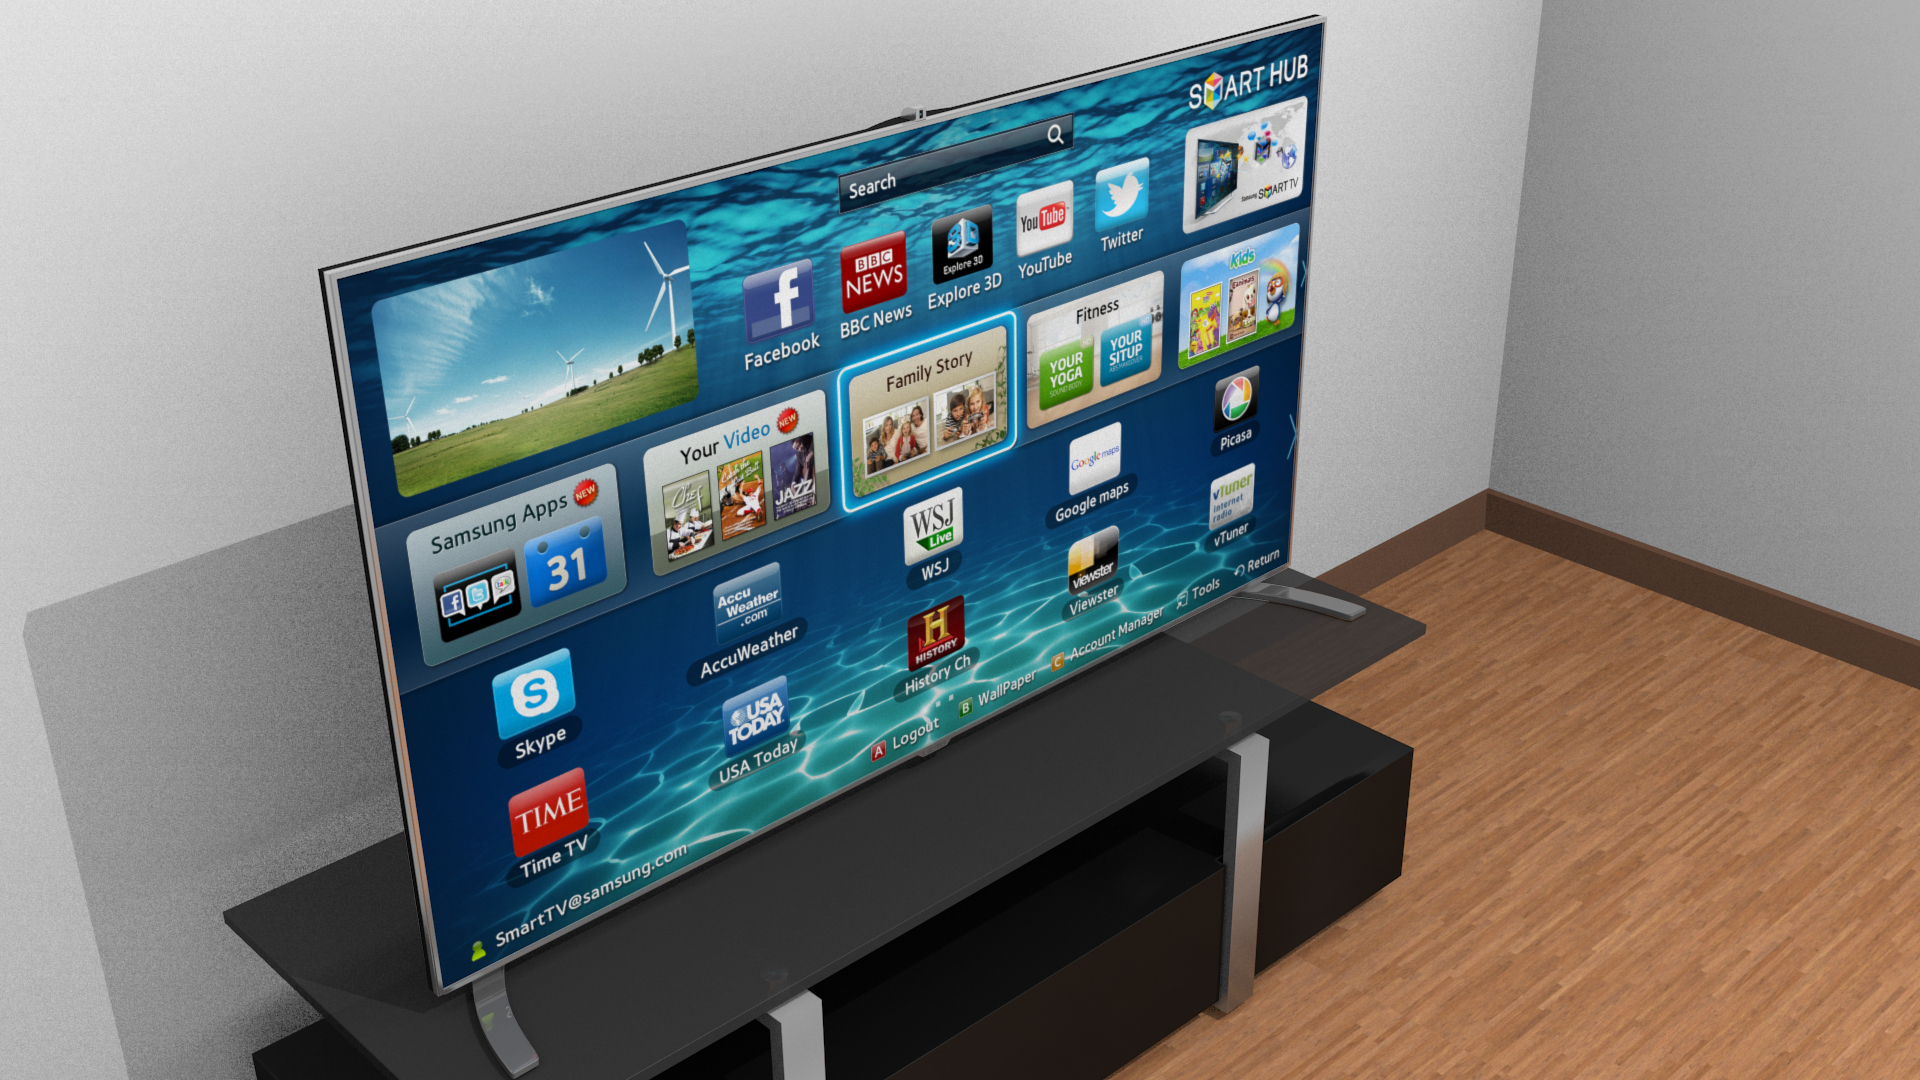 Samsung smart tv. Самсунг смарт ТВ f8000. Телевизор самсунг смарт ТВ. Самсунг телевизор с5 смарт ТВ. Samsung Smart TV с650.